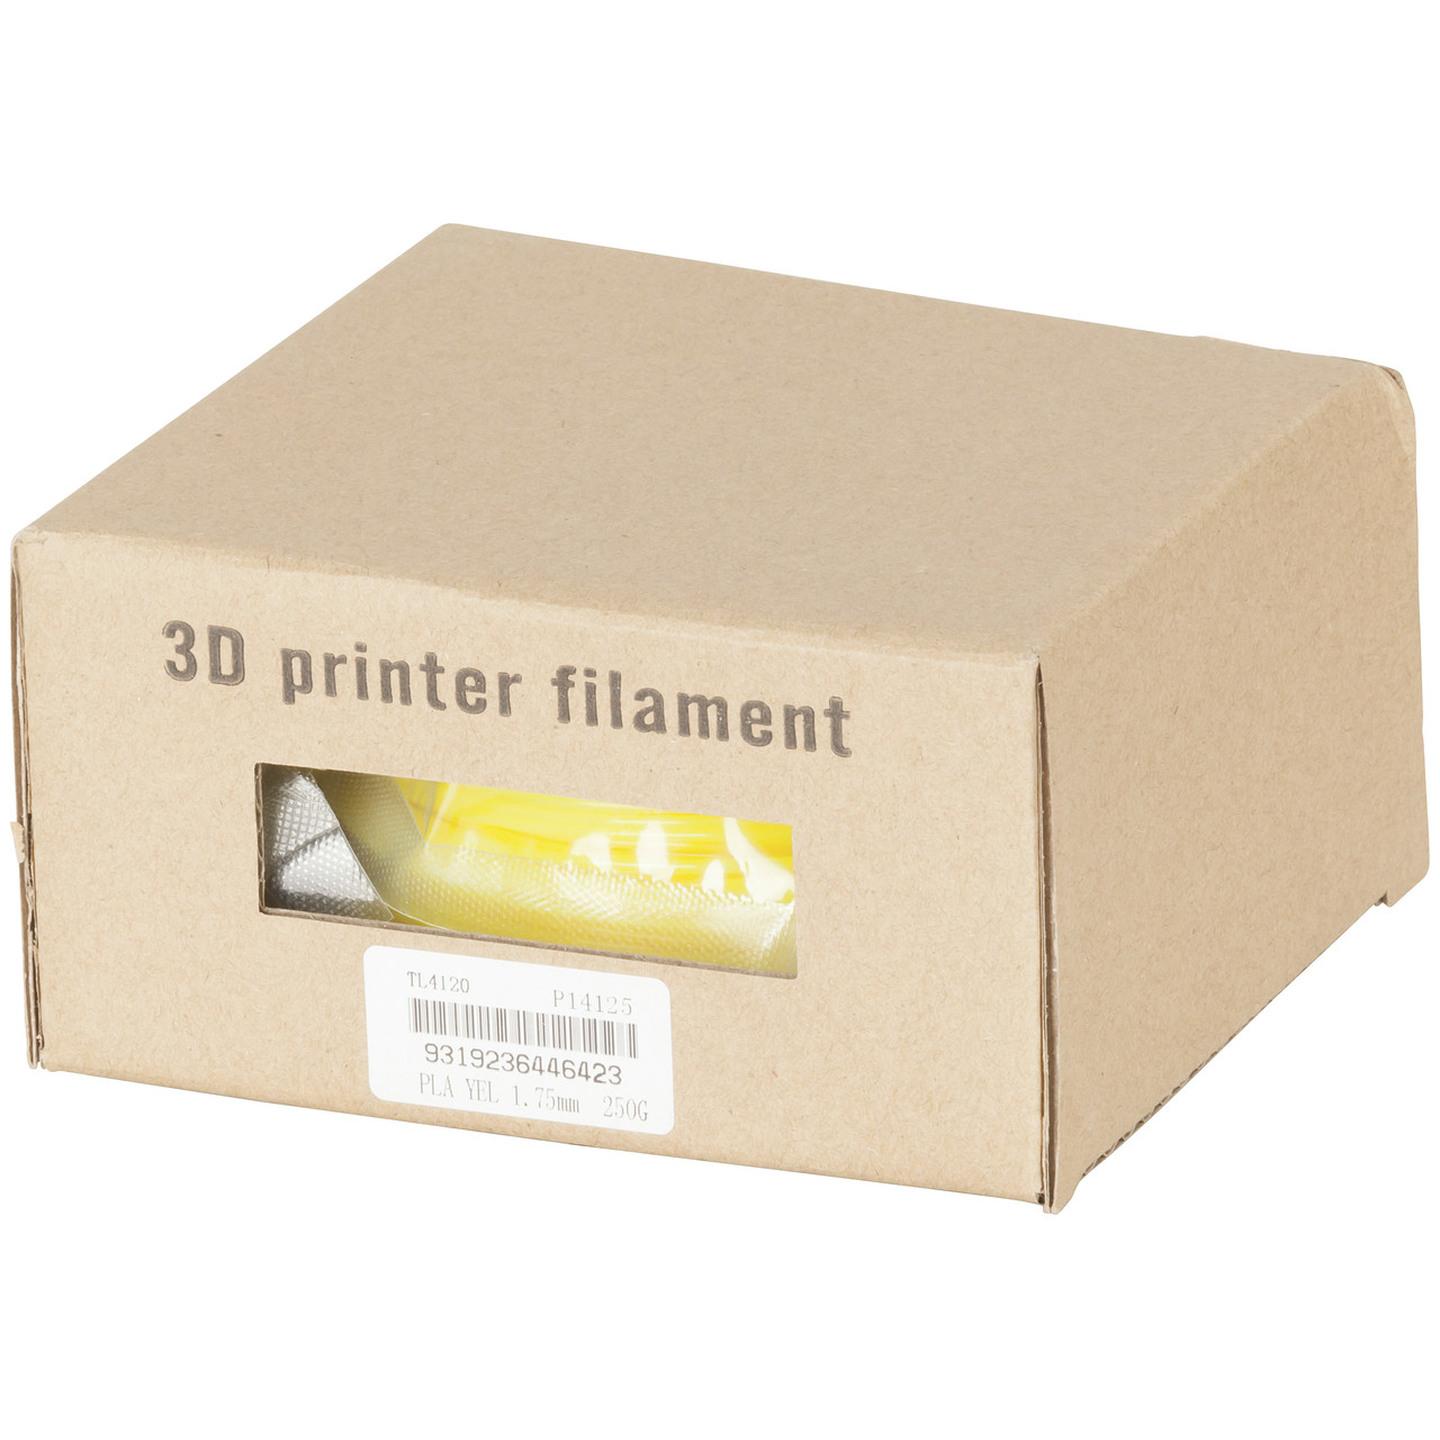 1.75mm Yellow 3D Printer Filament 250g Roll